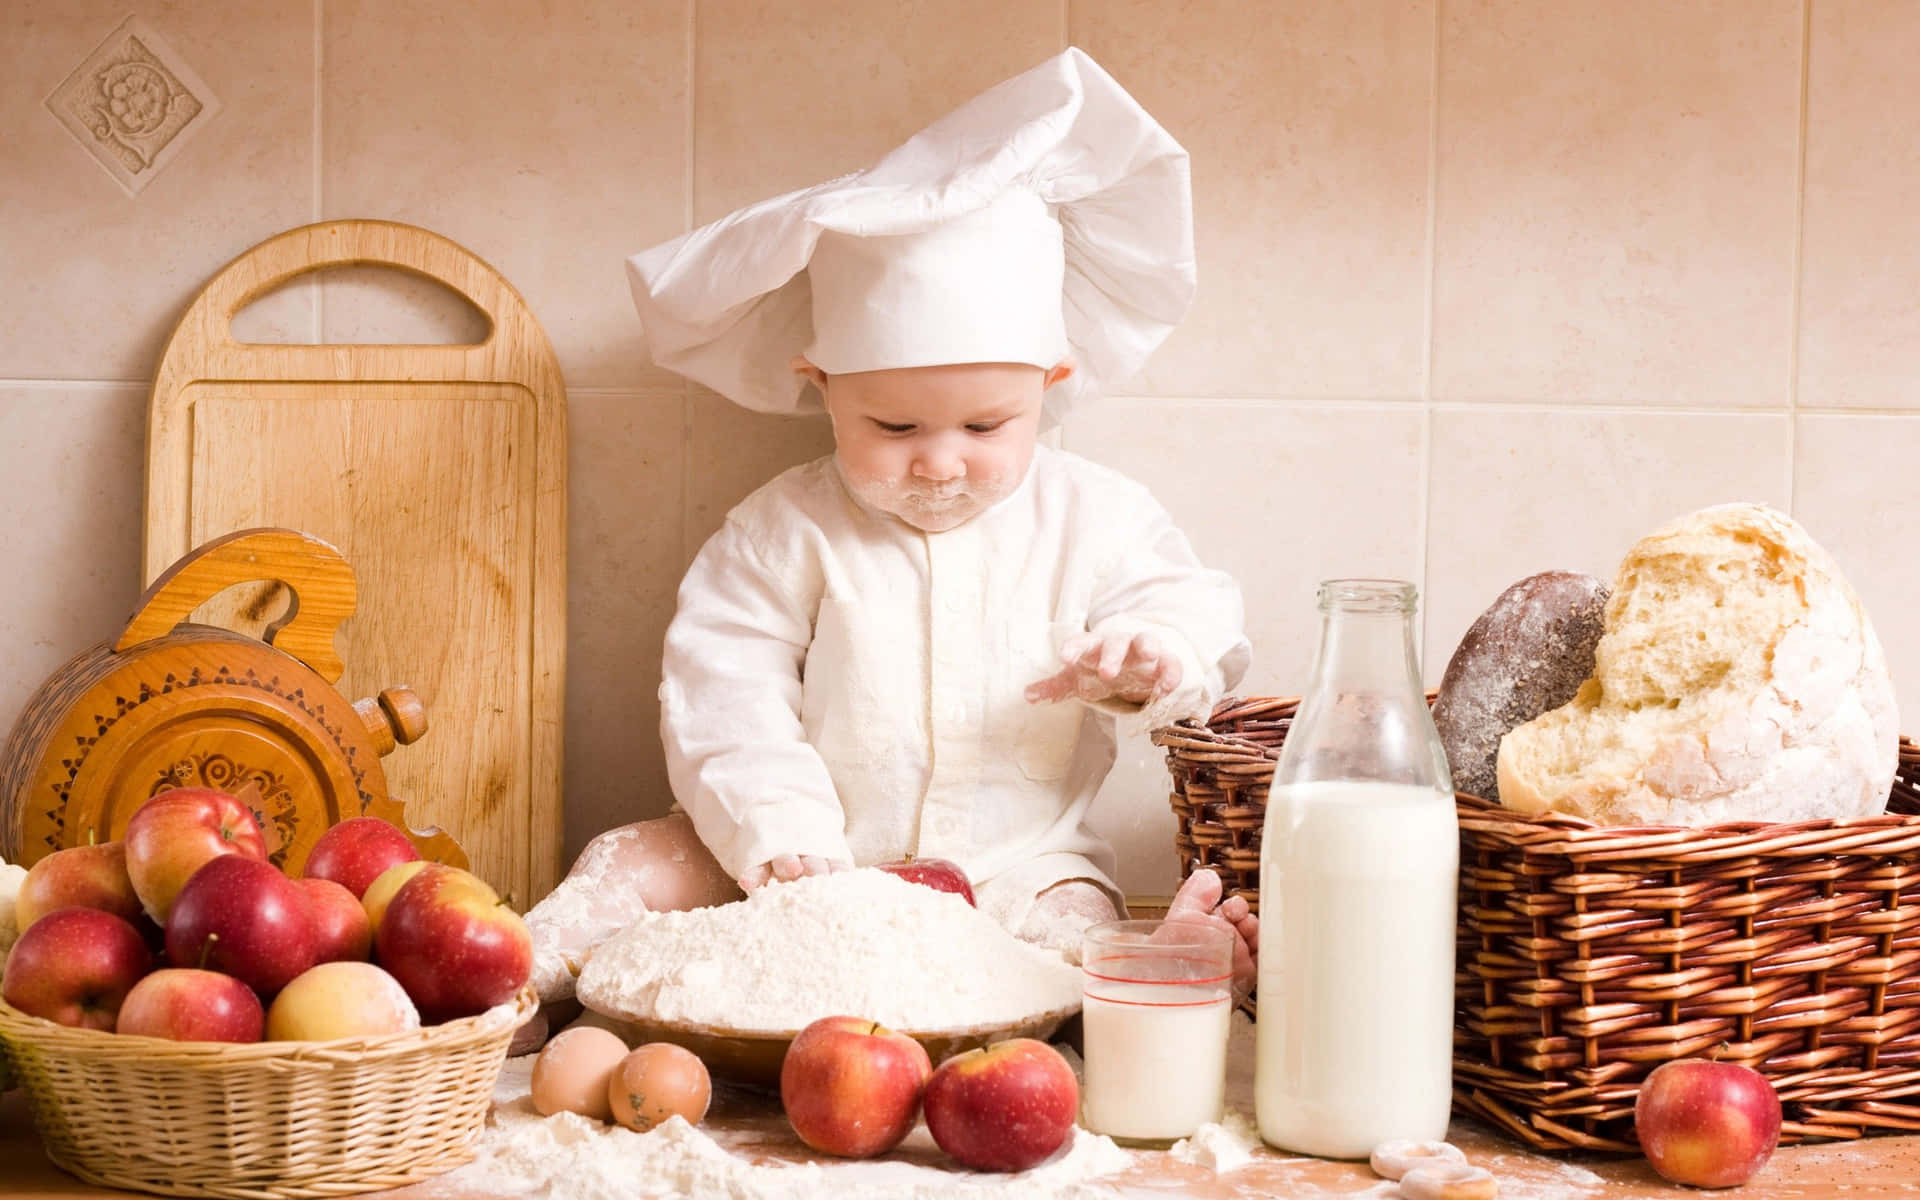 Imagende Un Lindo Bebé Niño Chef.